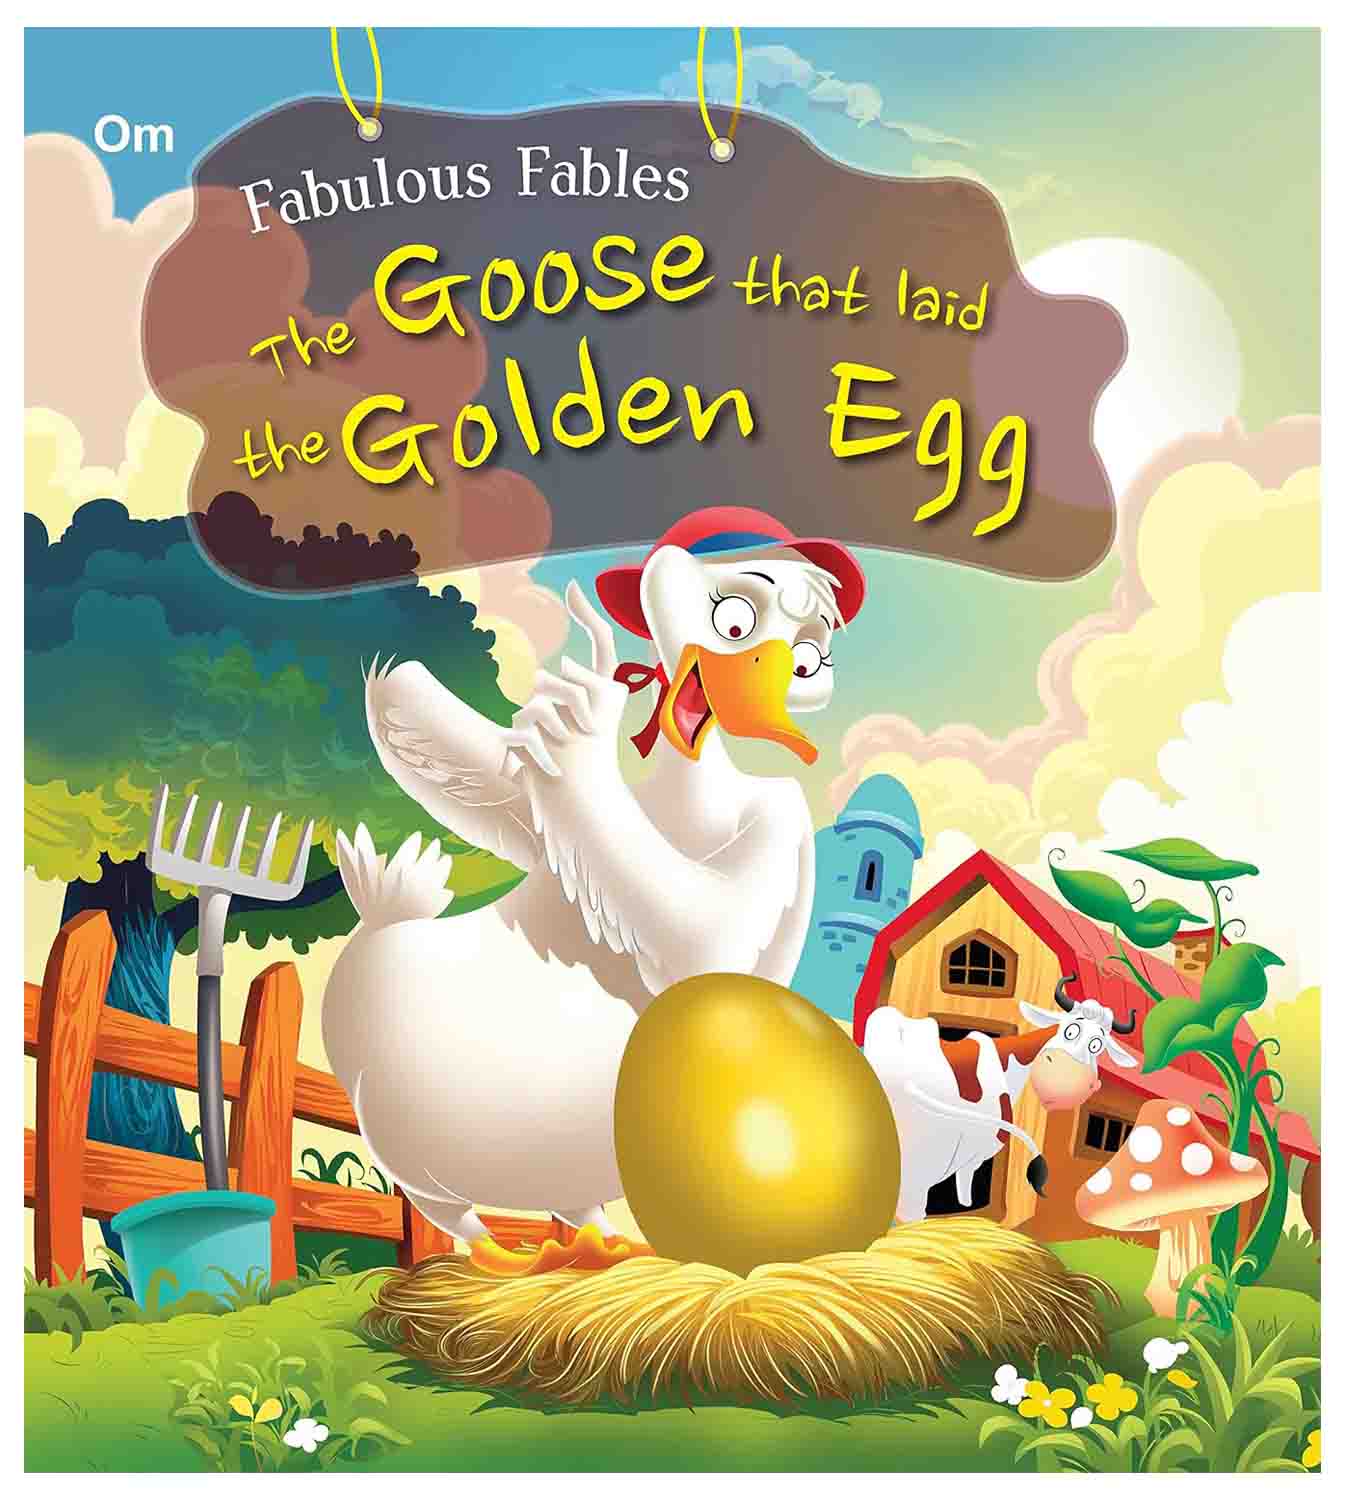 Om Books International Fabulous Fables Set Of 12 Books Pack - 9788196010928